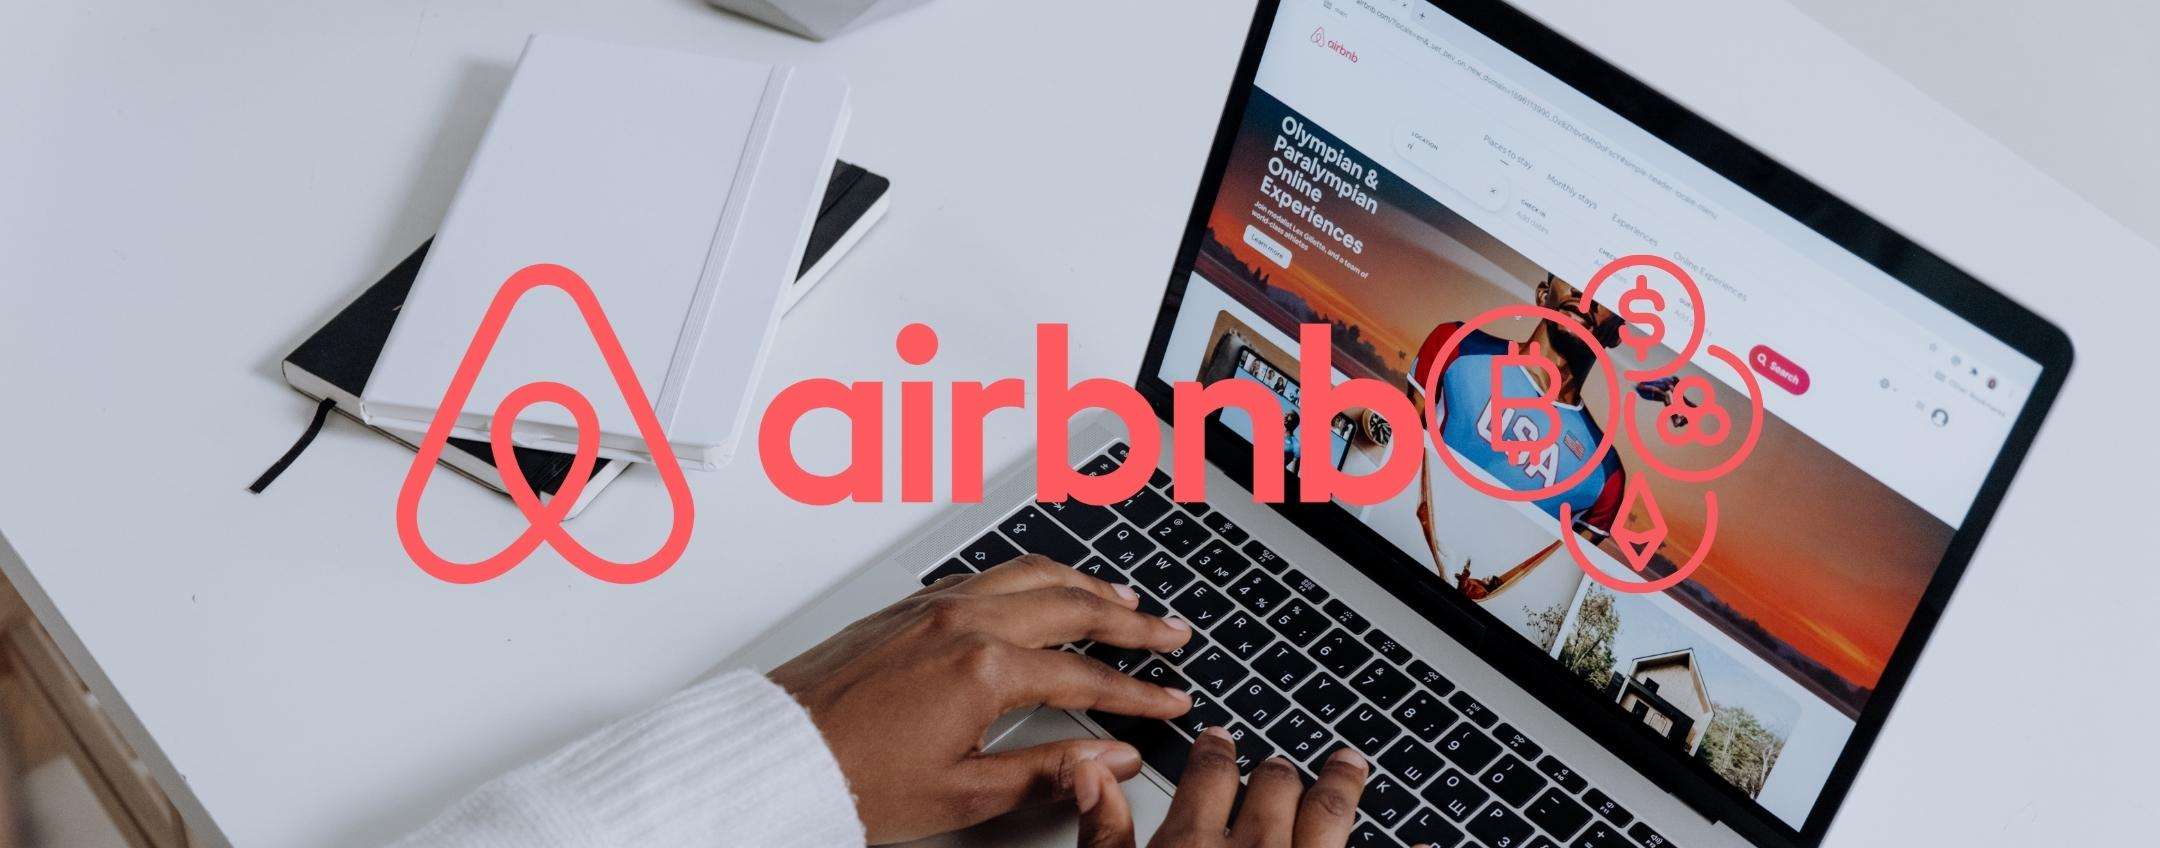 Airbnb a breve potrebbe supportare il pagamento in criptovalute